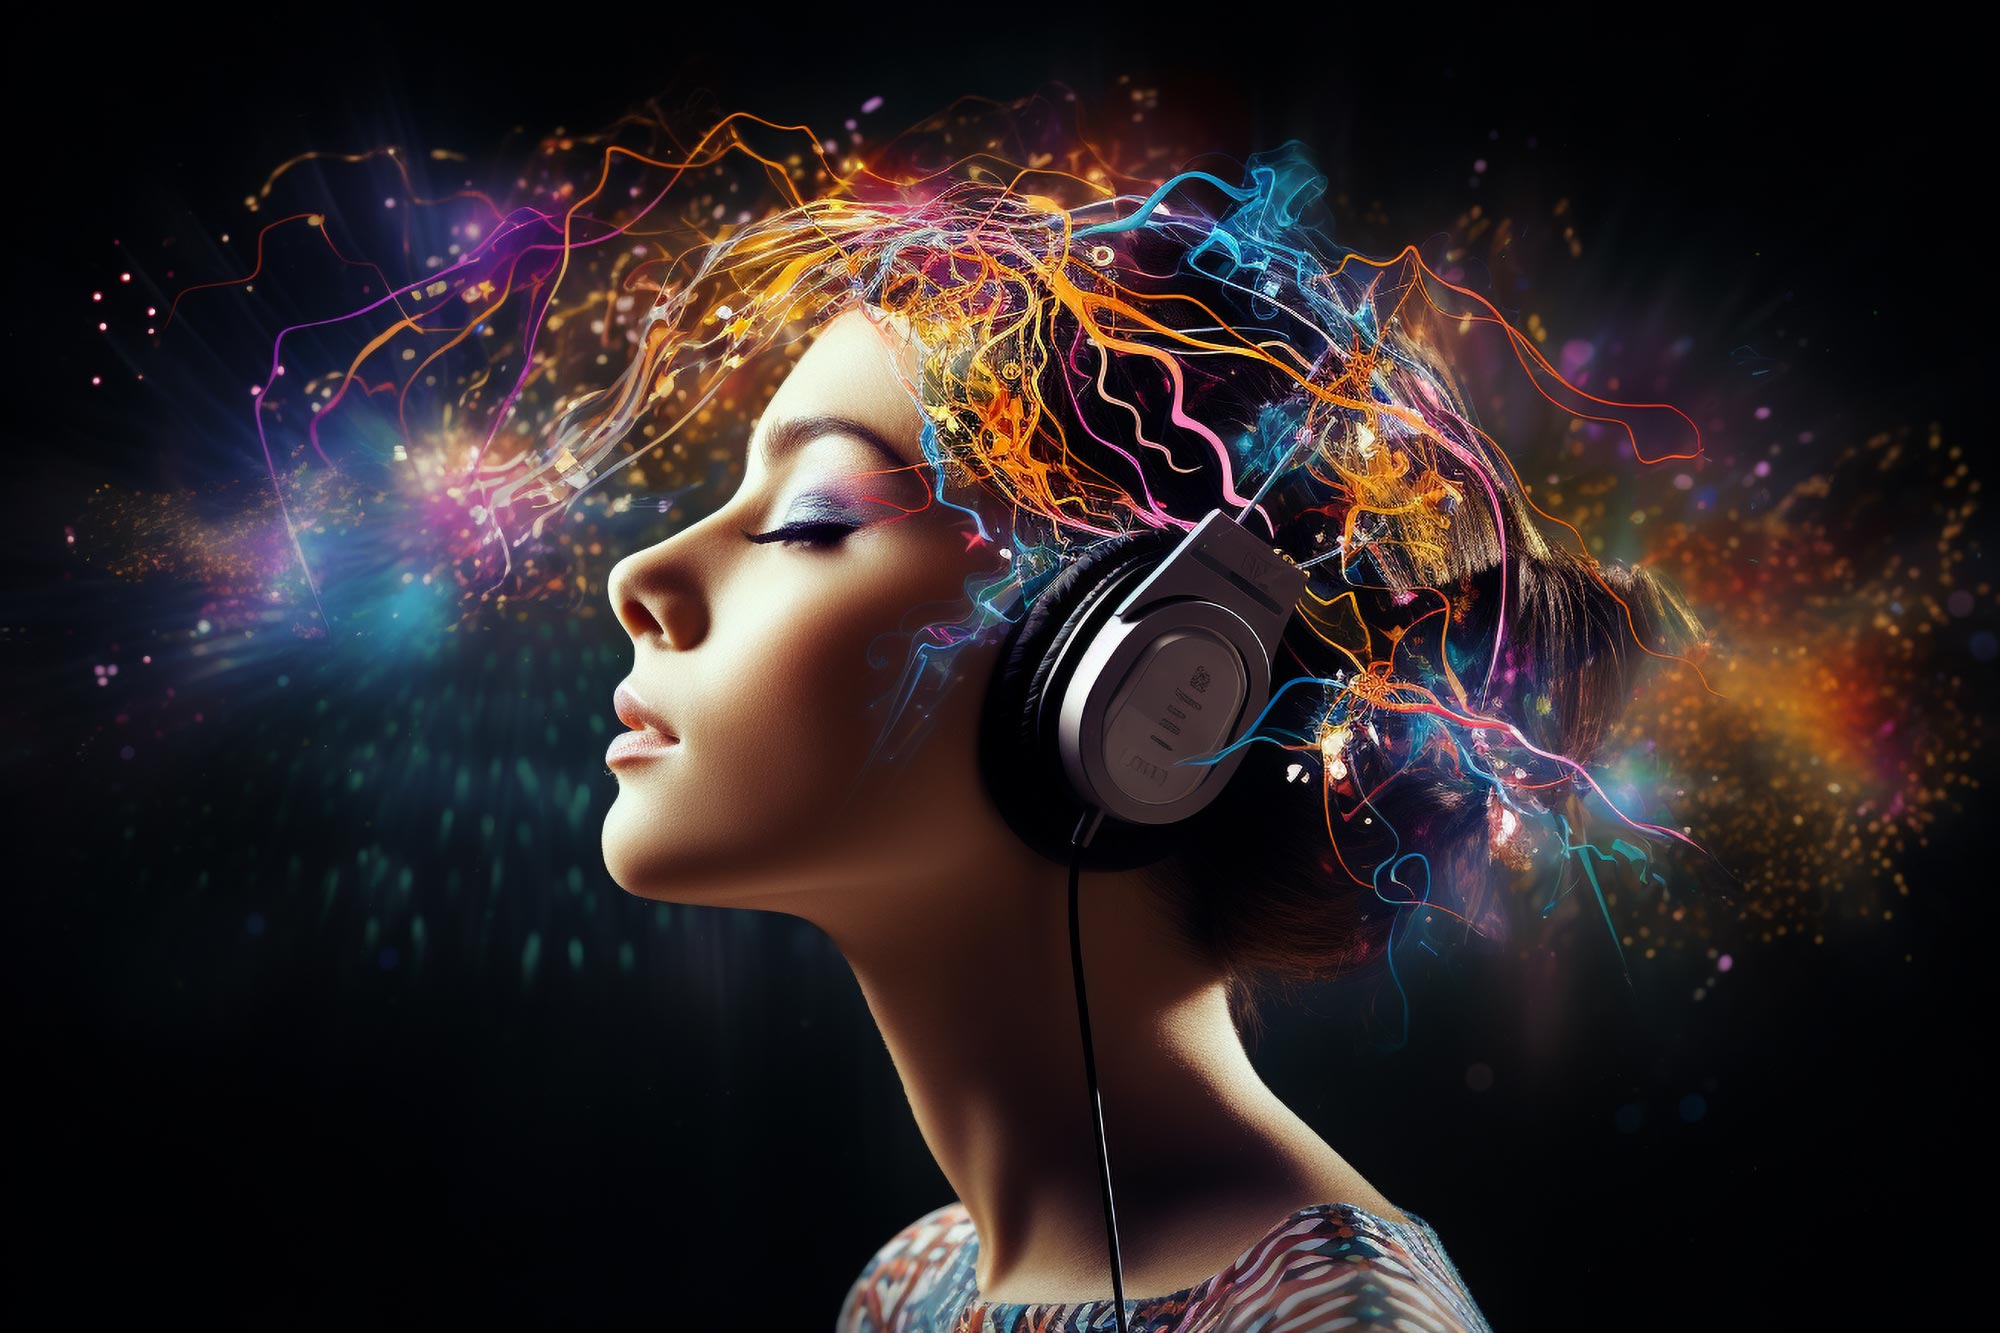 Operacja mózgu przebudzonego muzyka ujawnia złożoność przetwarzania muzyki i języka